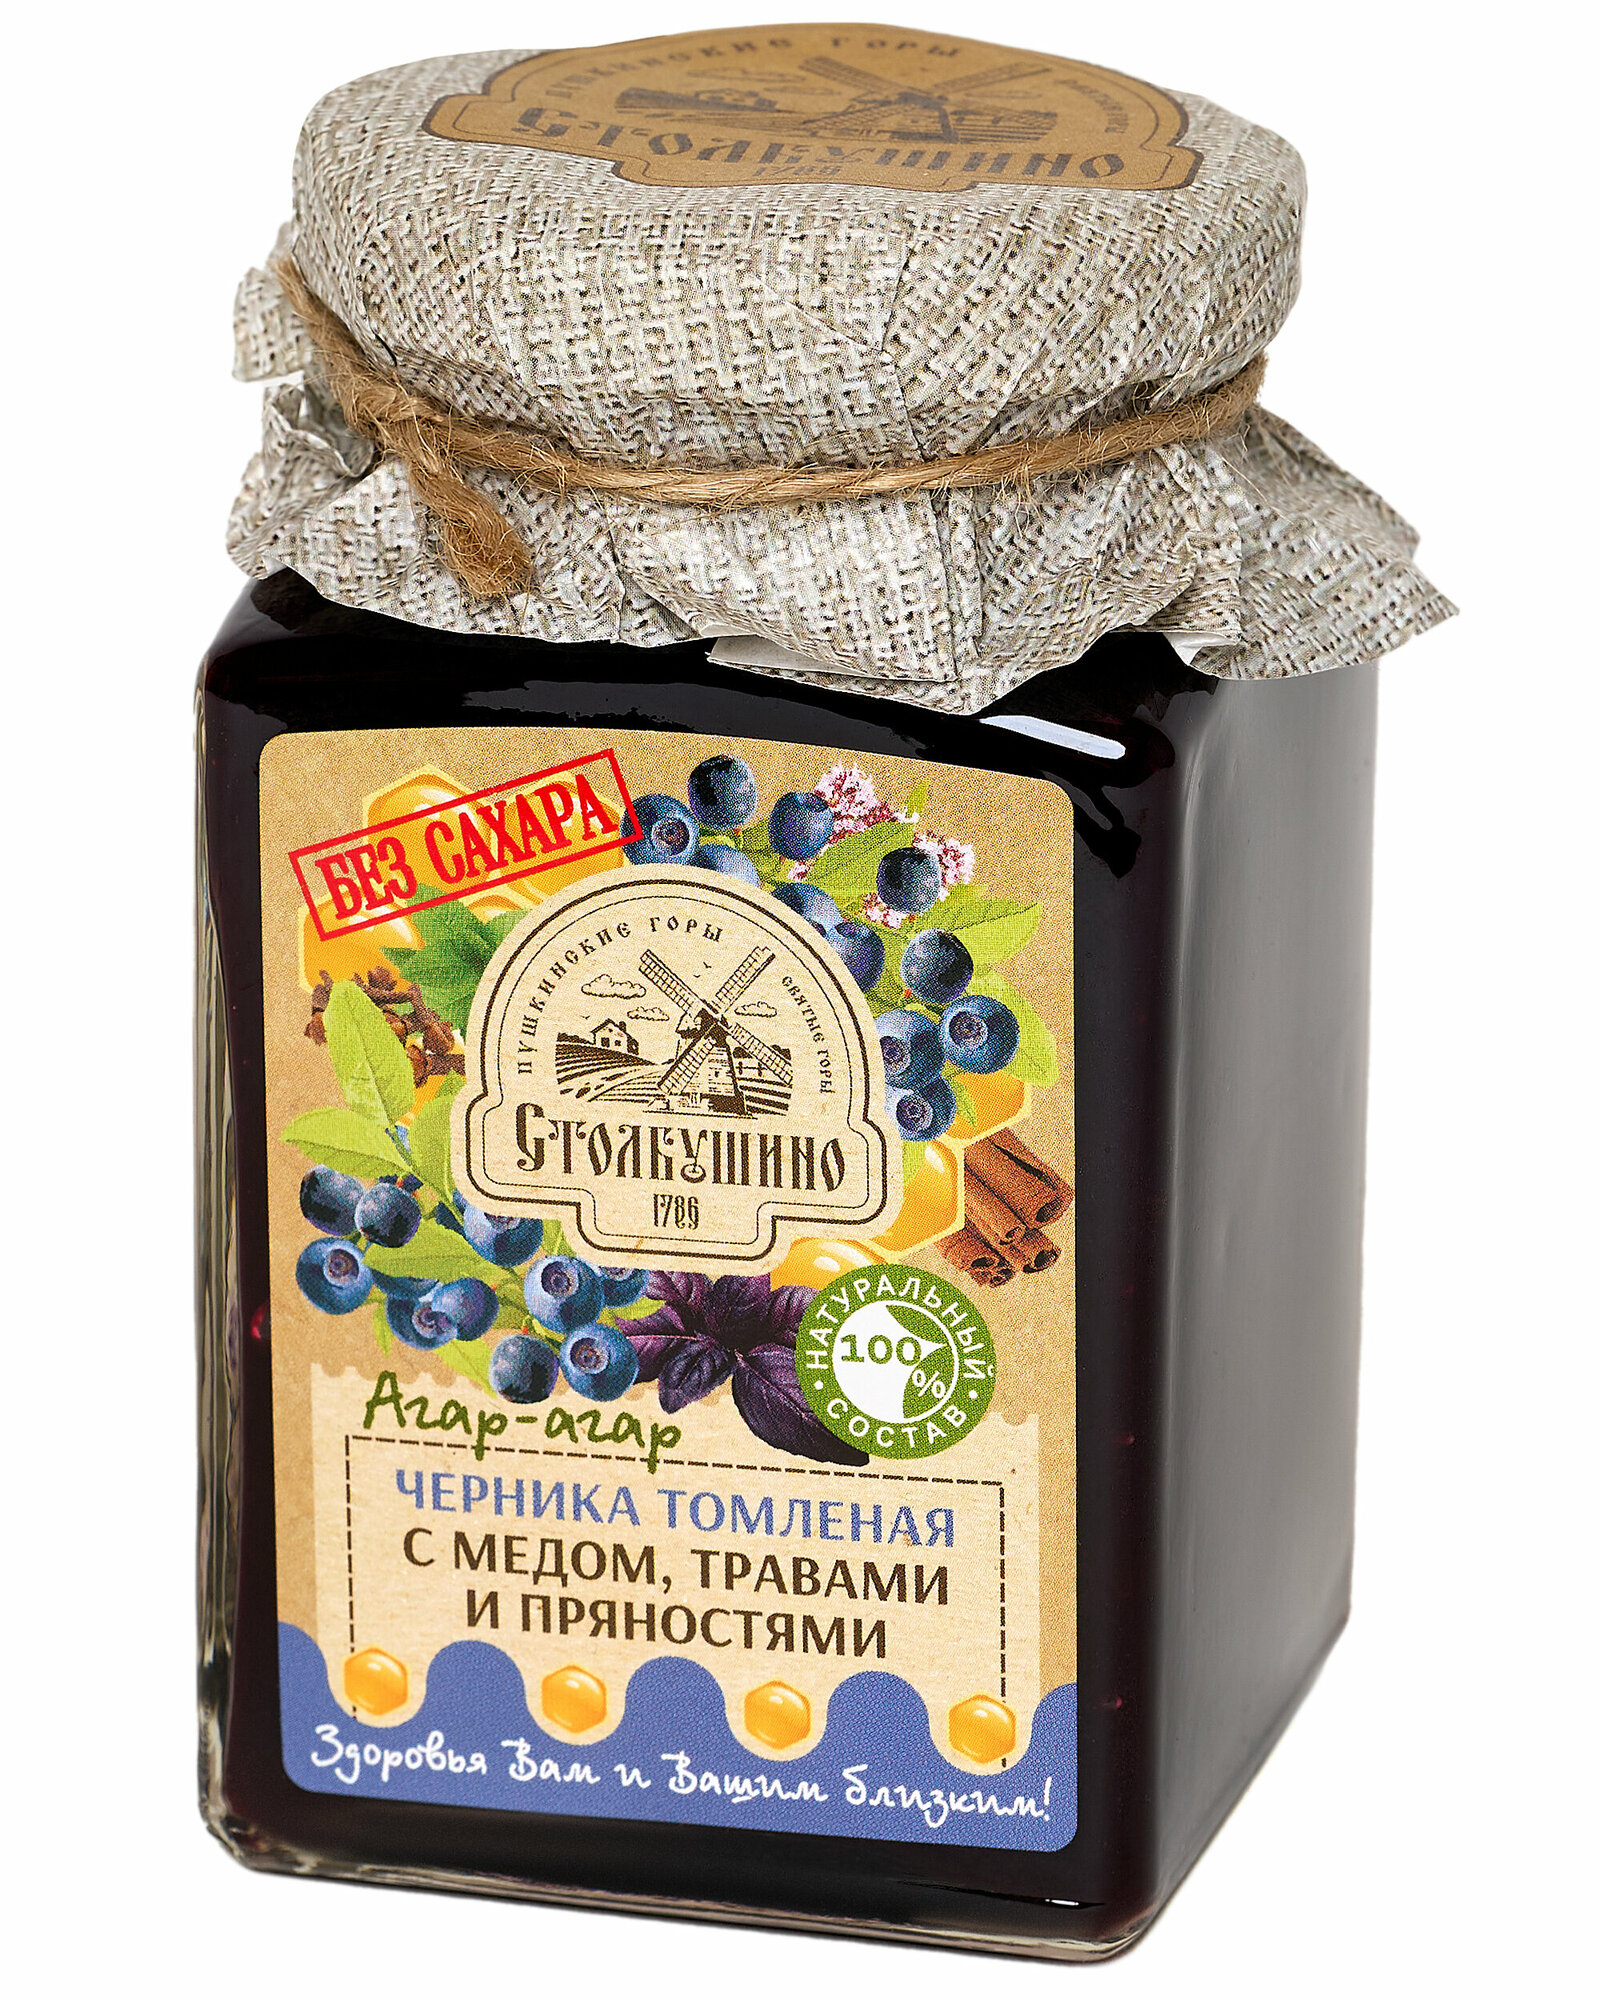 Варенье Черника томленая без сахара с медом агар-агаром травами и пряностями Столбушино 250 гр